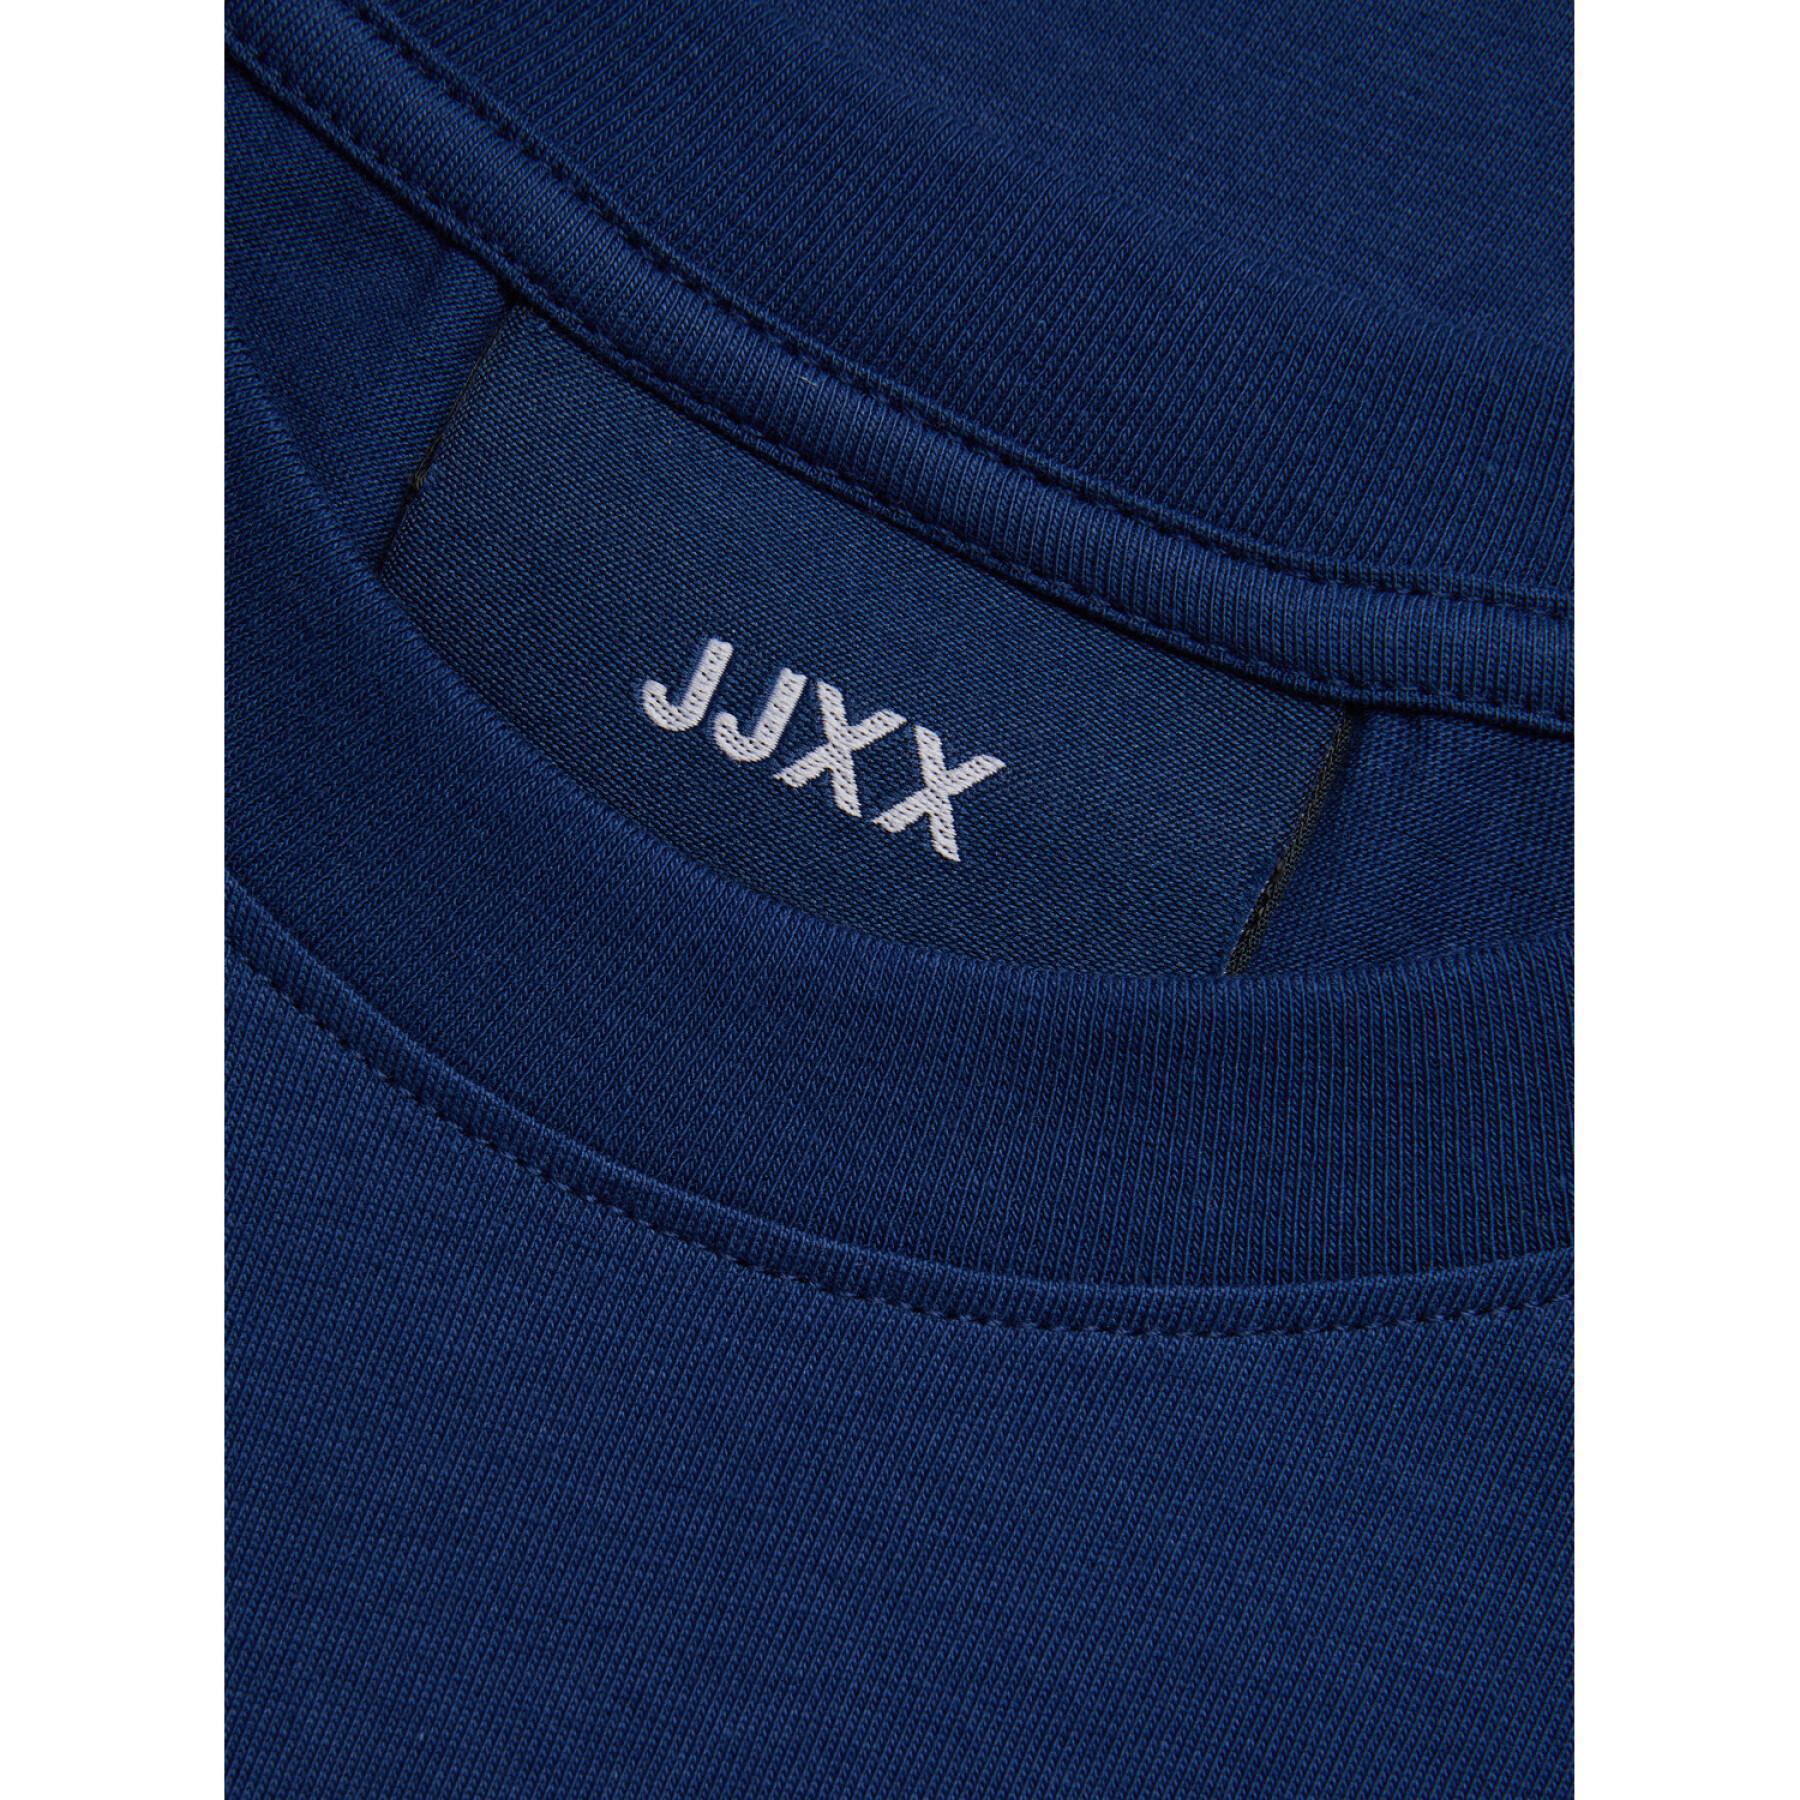 T-shirt groot logo vrouw JJXX Anna Reg Every